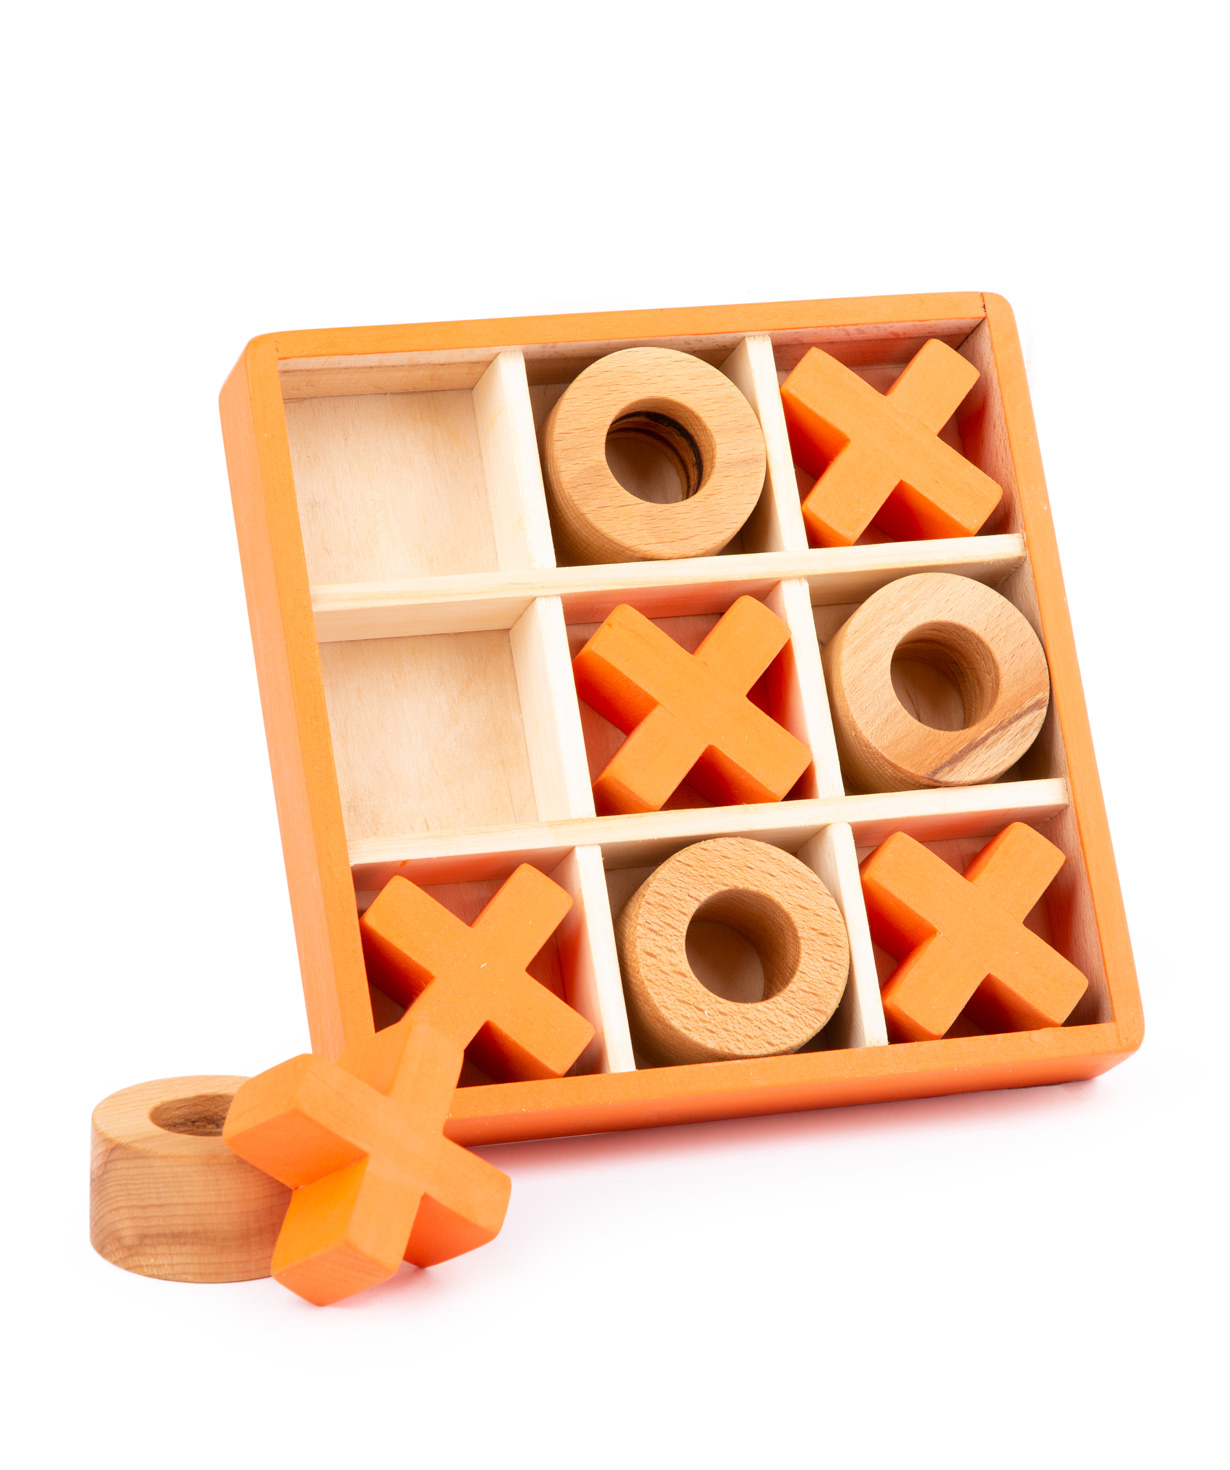 Խաղալիք «Im wooden toys» Tic Tac Toe